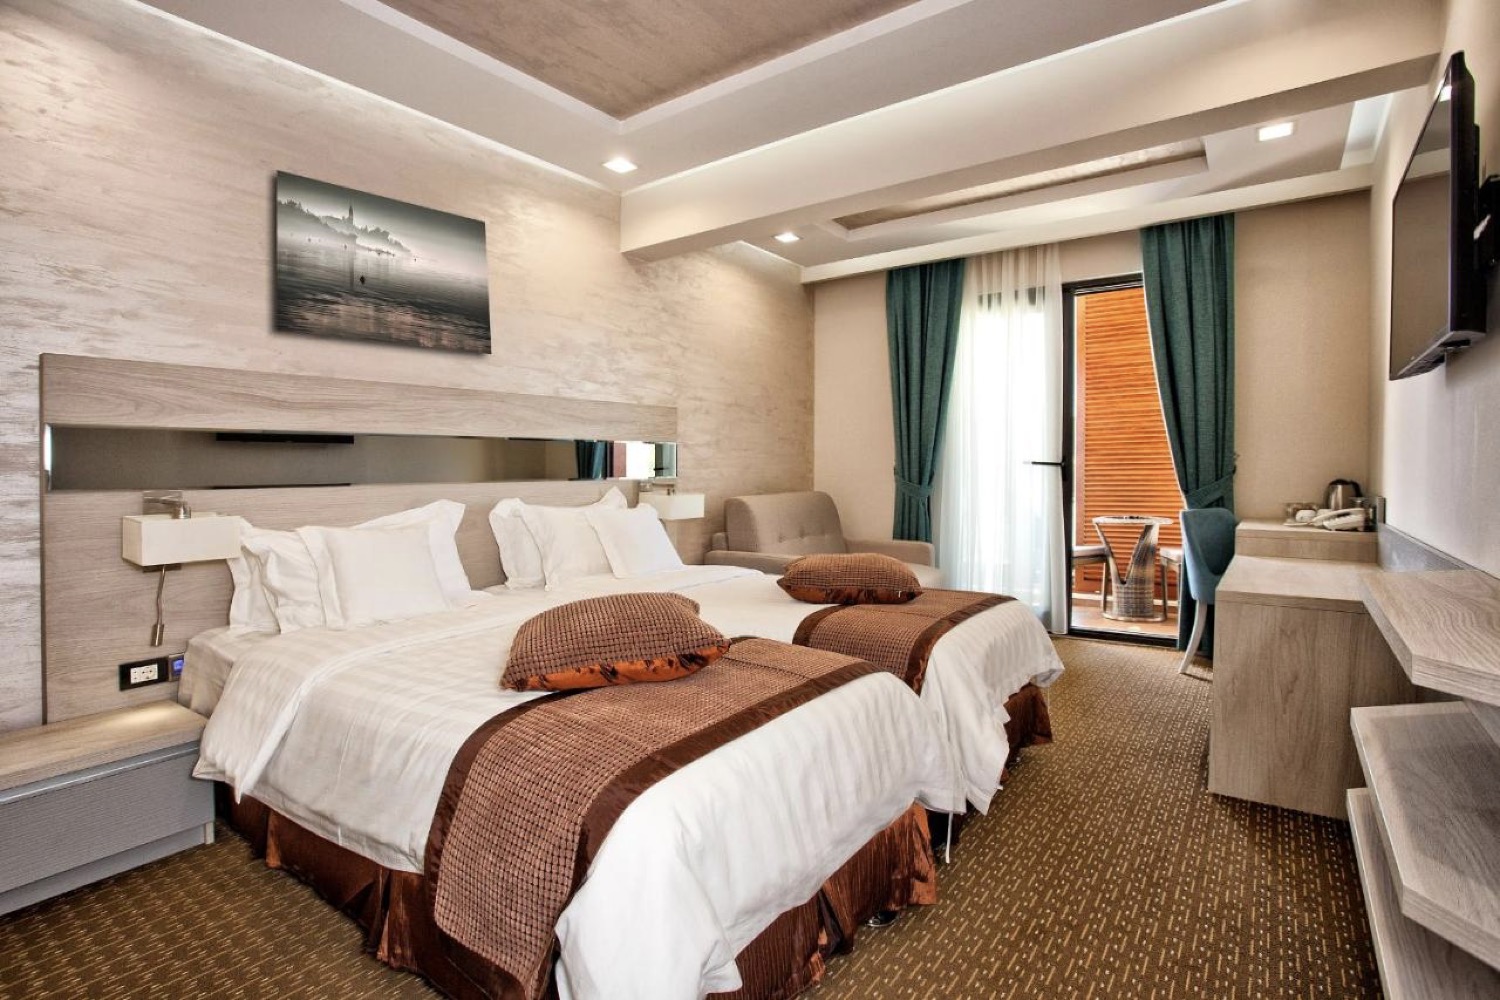 Rekomendowane hotele w Herceg Novi.